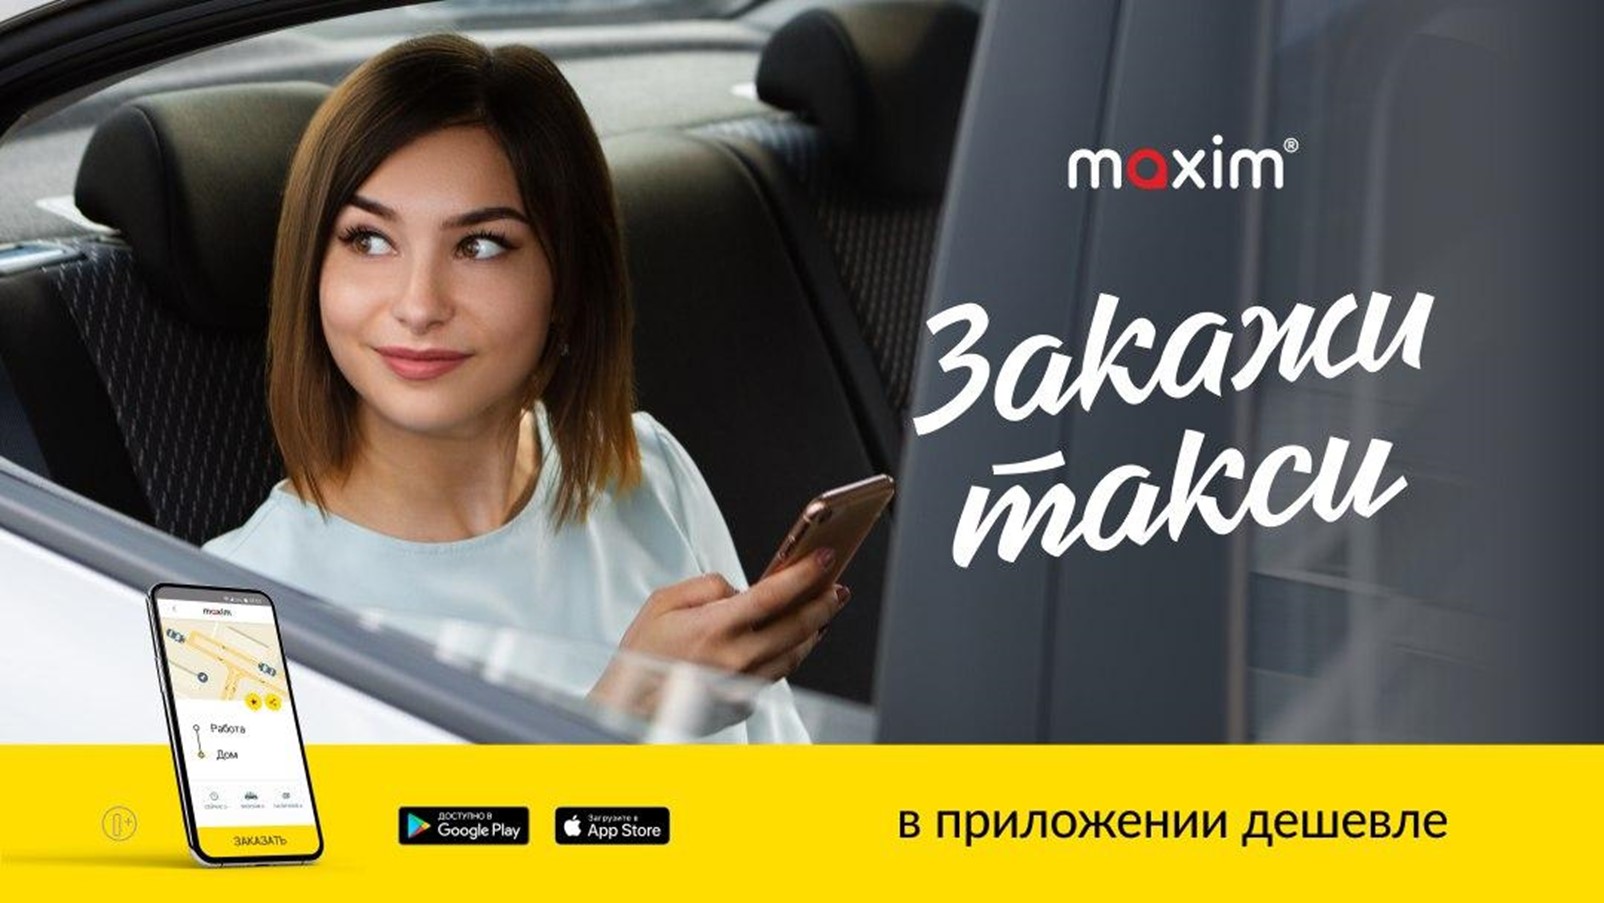 Реклама такси "Максим"